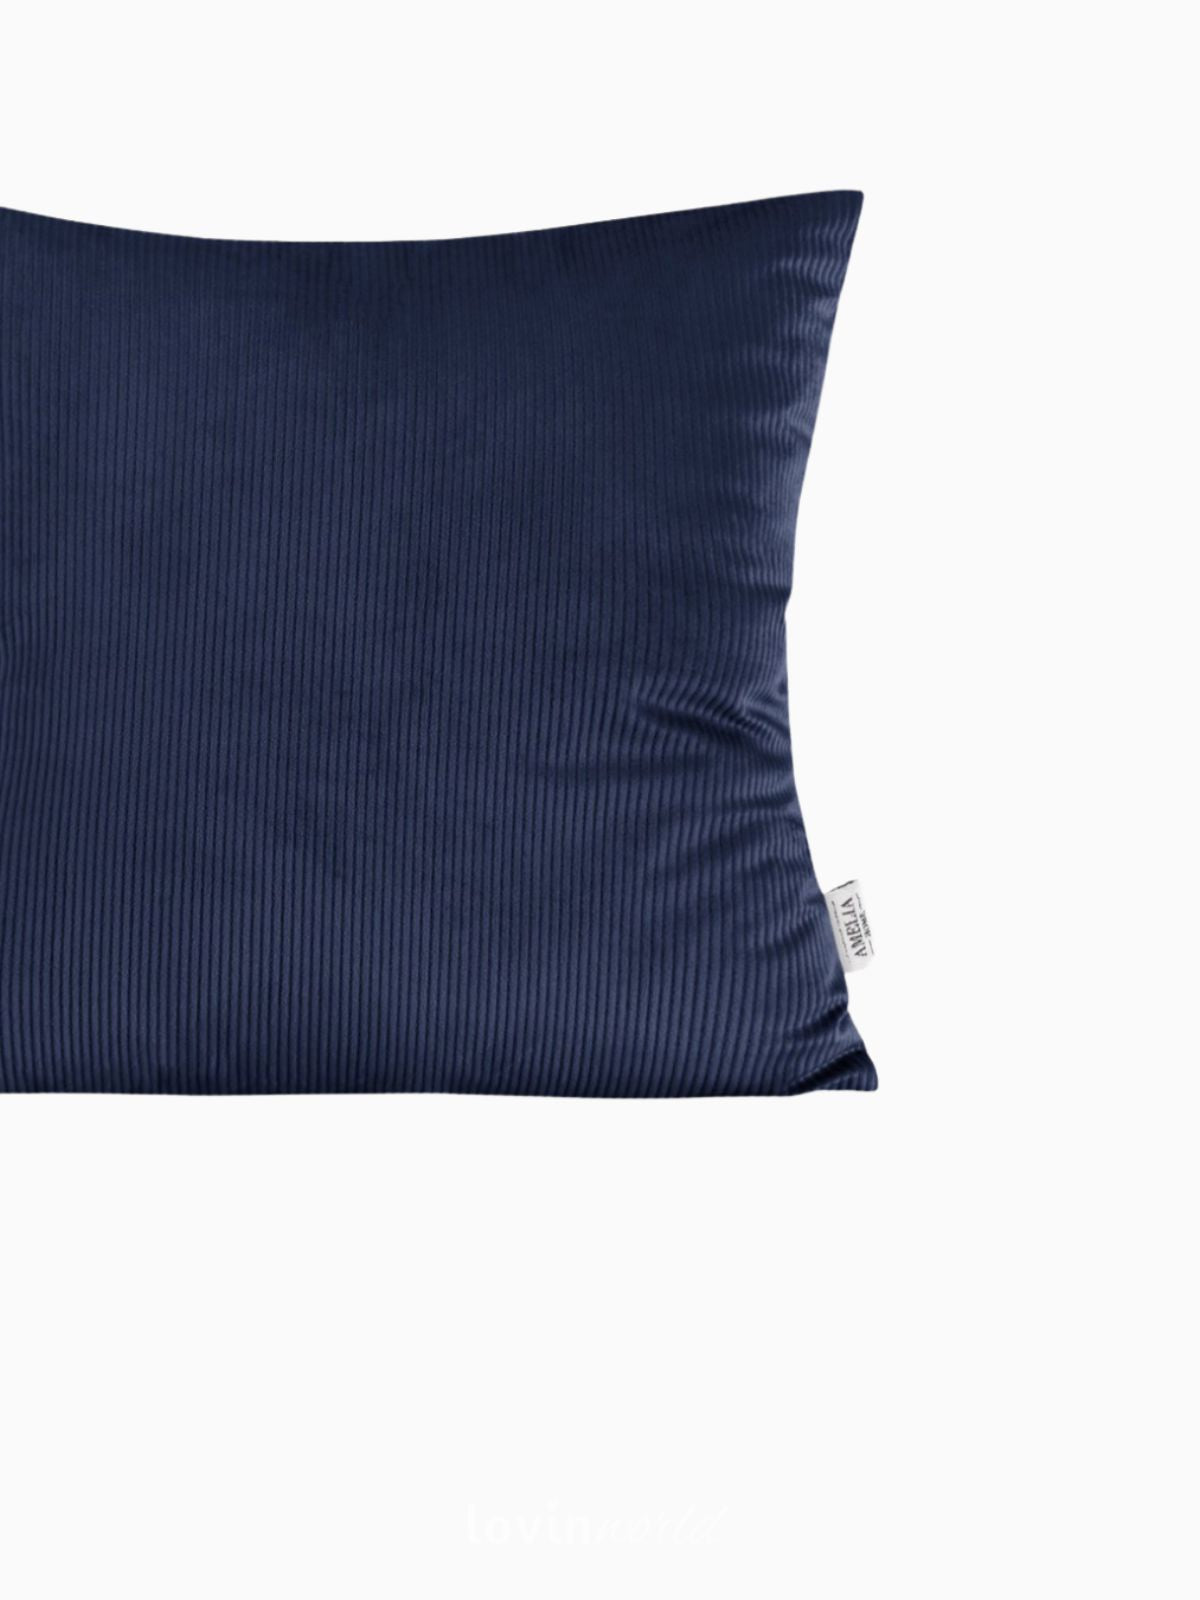 Cuscino decorativo in velluto Duffy, colore blu 45x45 cm.-4